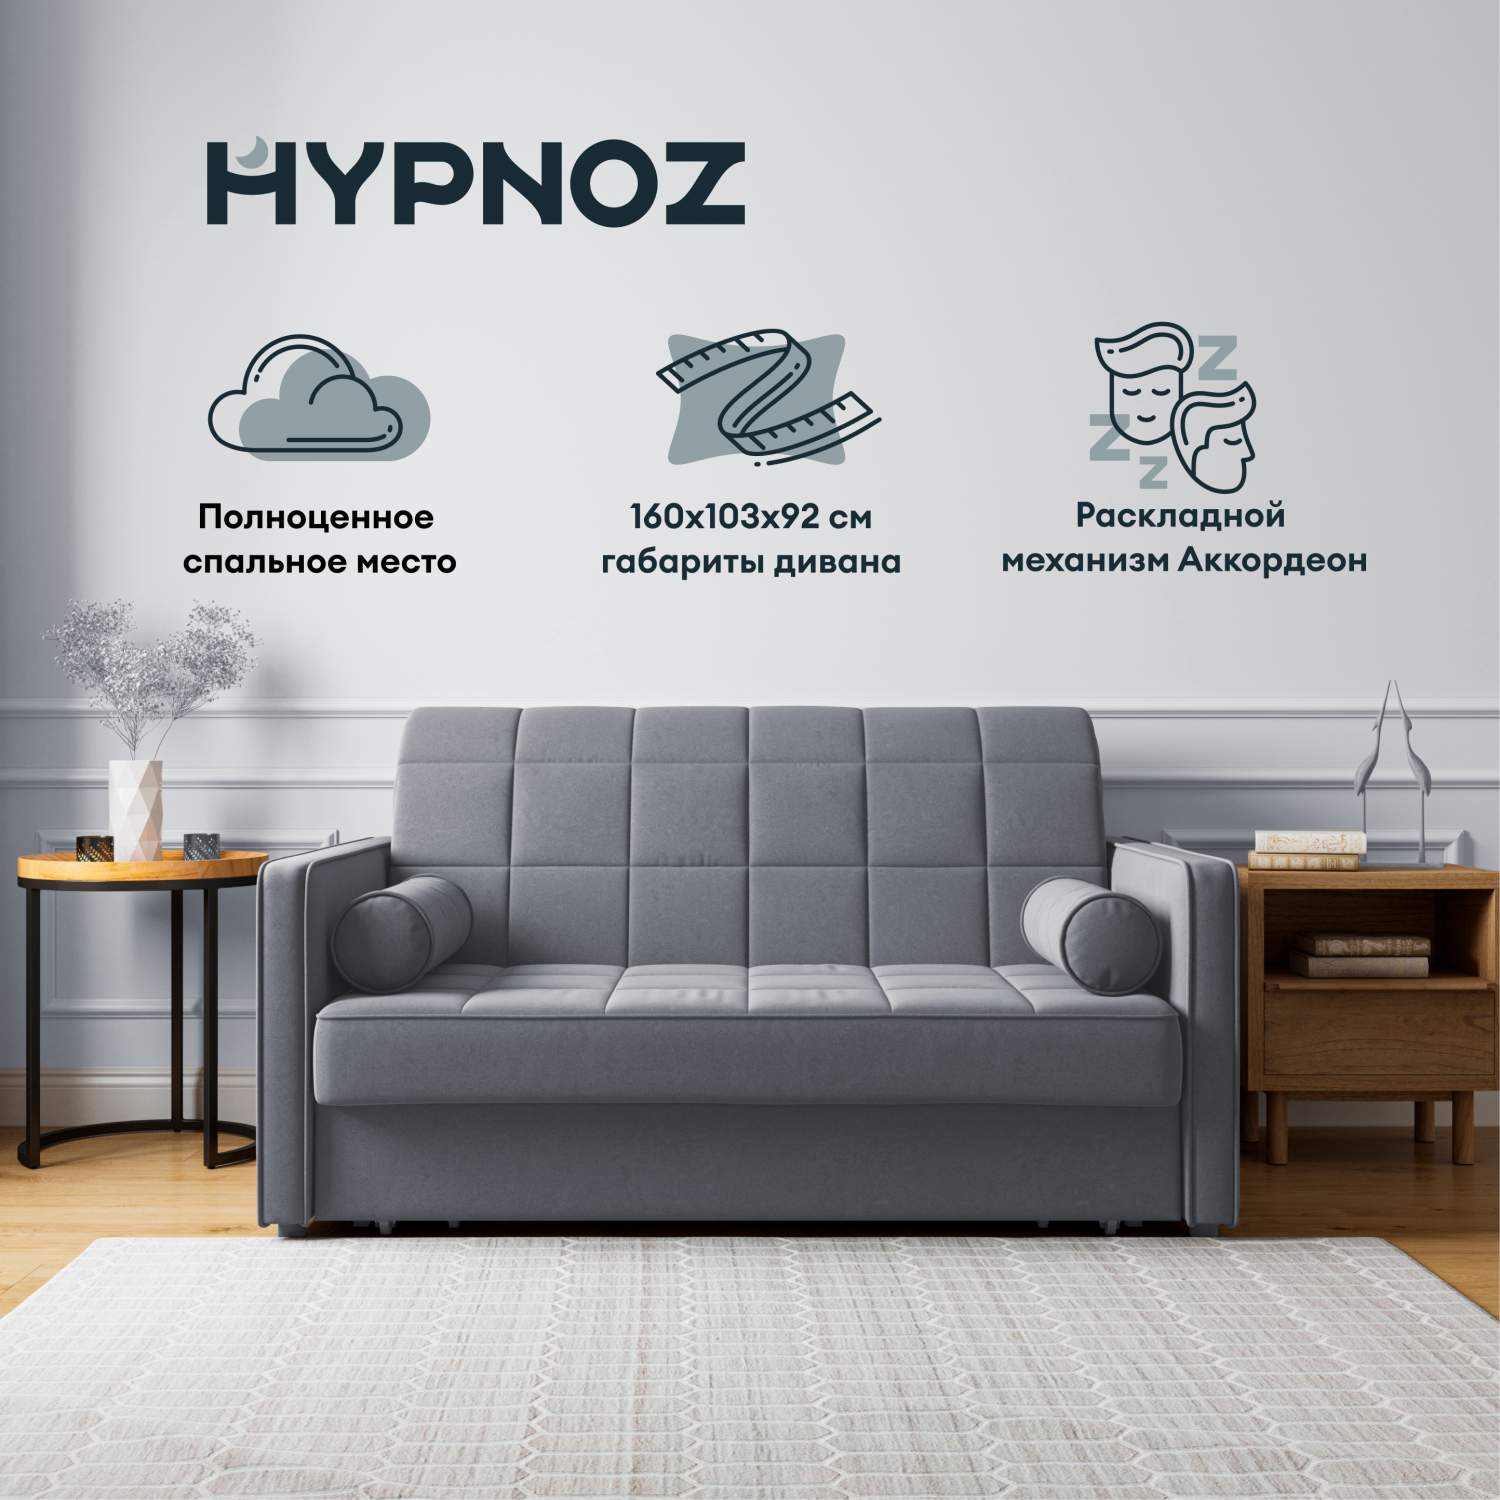 Диван-кровать HYPNOZ Palma, механизм Аккордеон, Тёмно-серый, 160х103х92 -отзывы покупателей на Мегамаркет